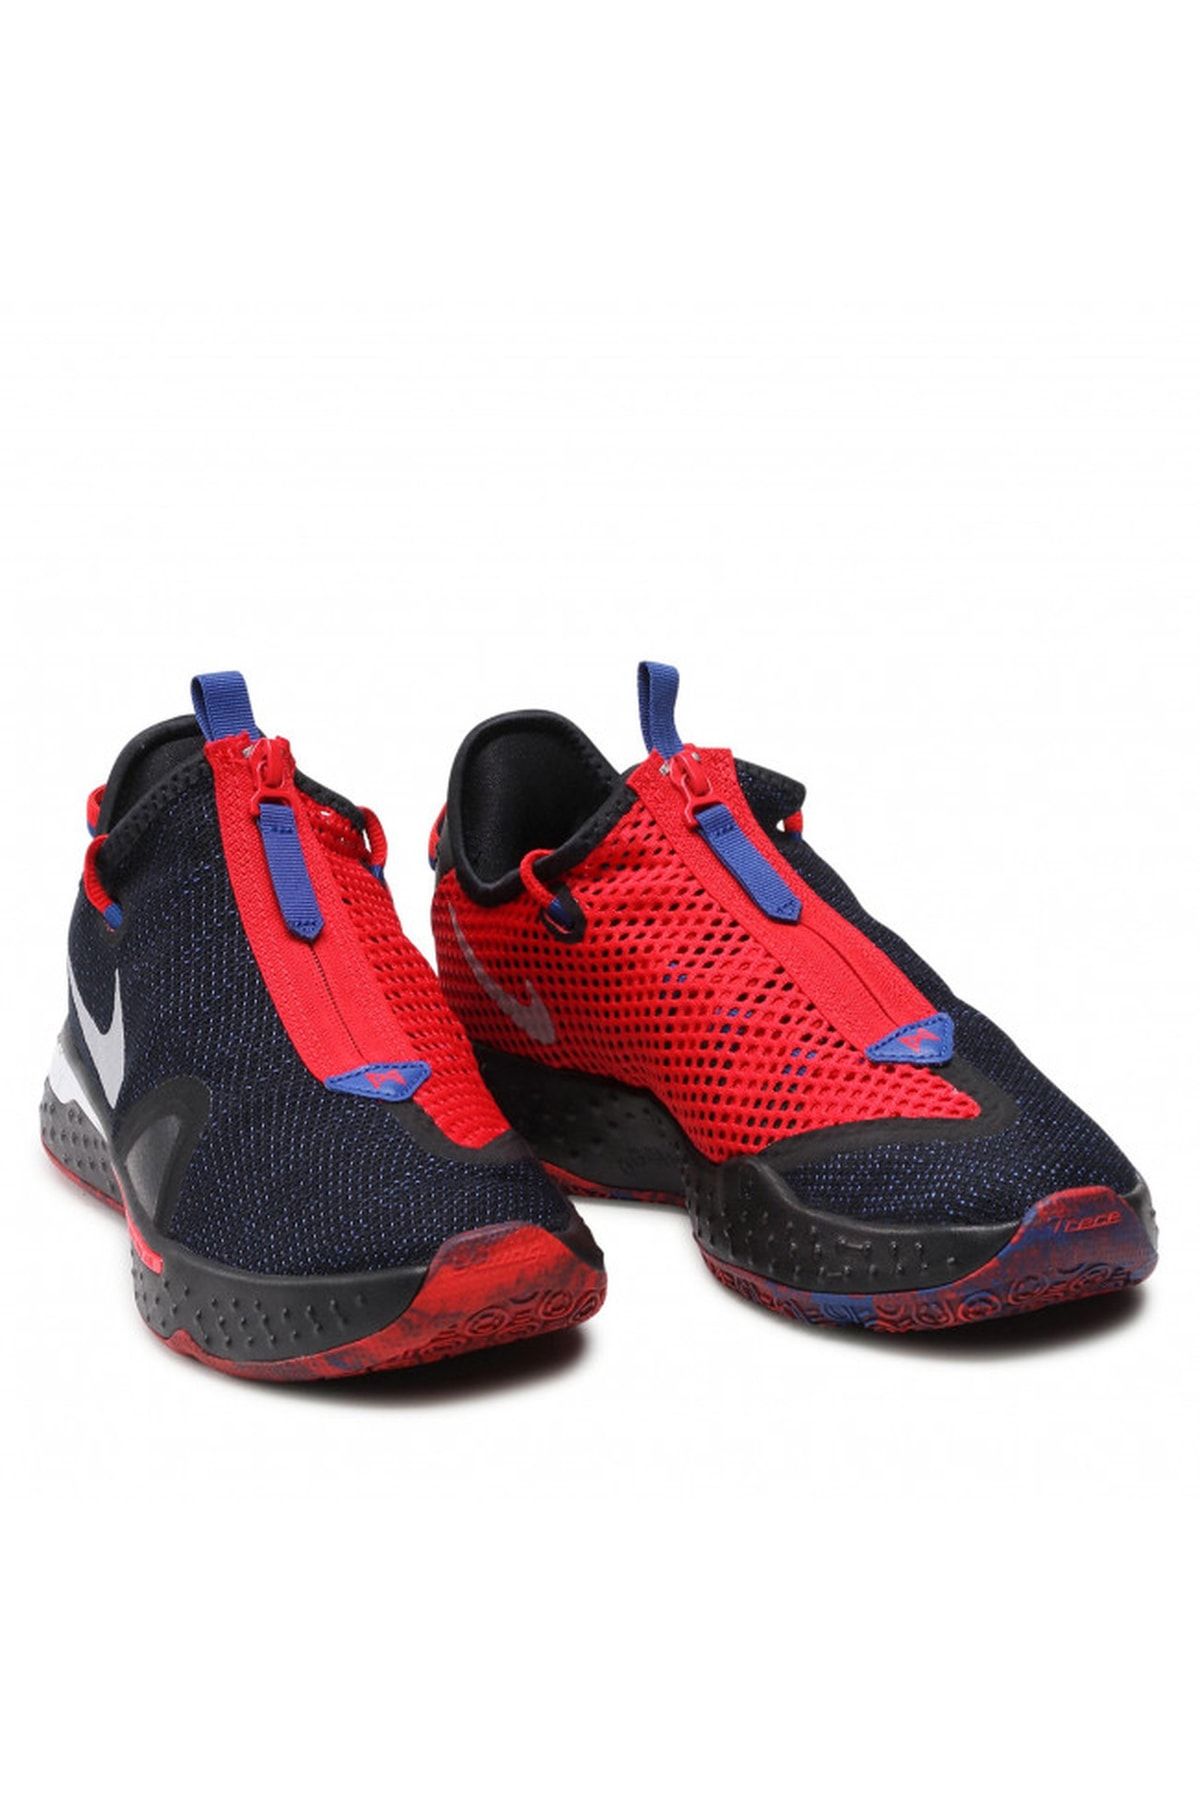 Nike Paul George Pg 4 - Bred - Cd5079-006 Basketbol Ayakkabısı